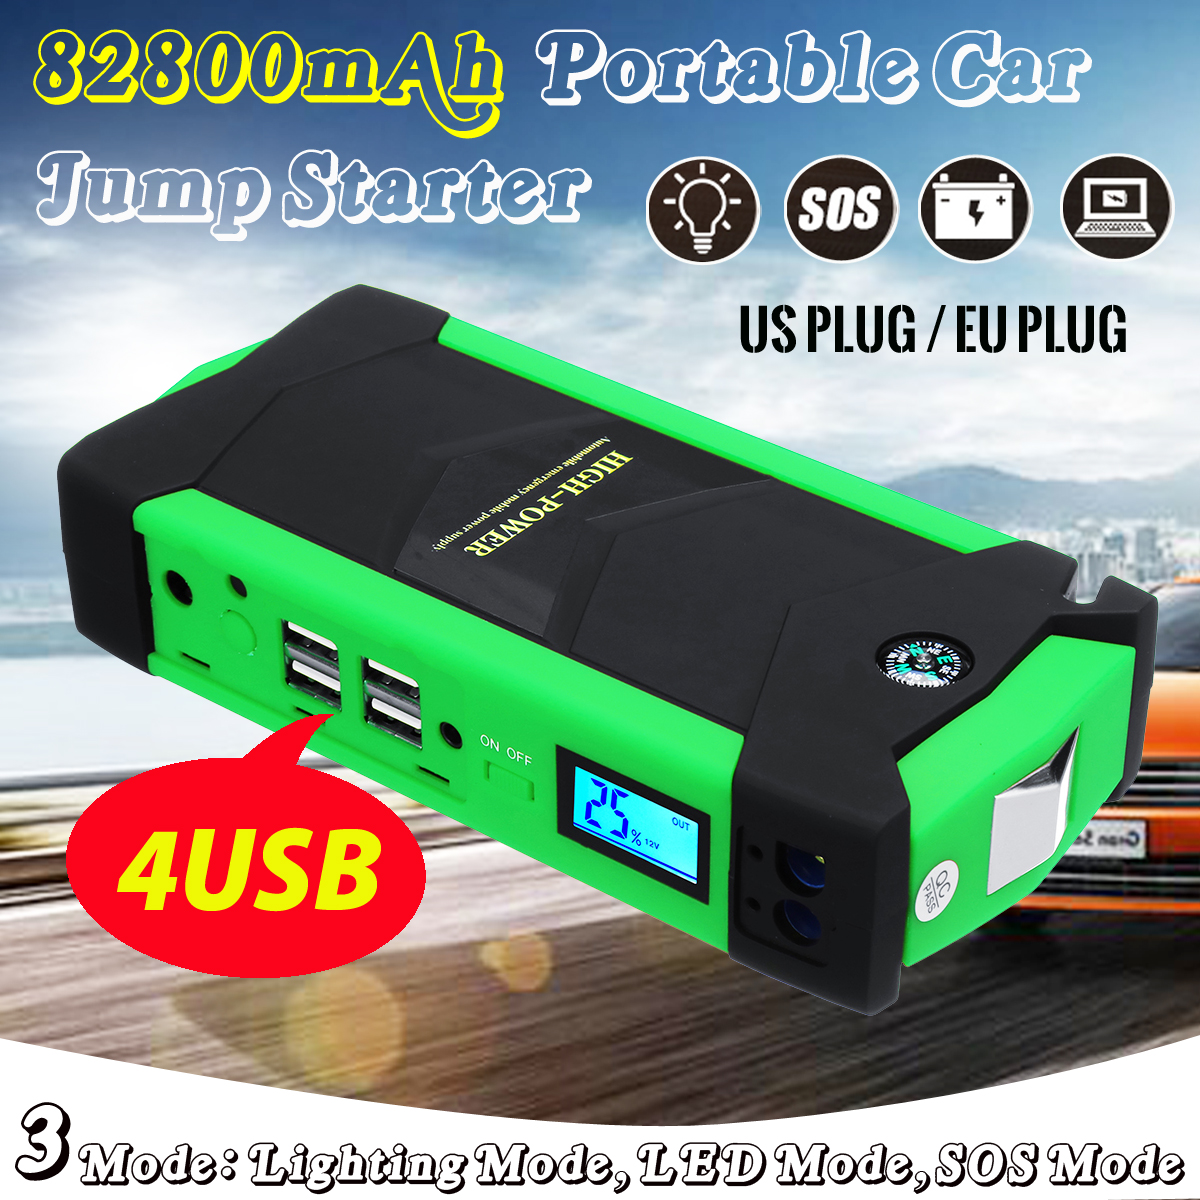 82800mAh-600A-Peak-4USB-Portable-Waterproof-Car-Jump-Starter-1402499